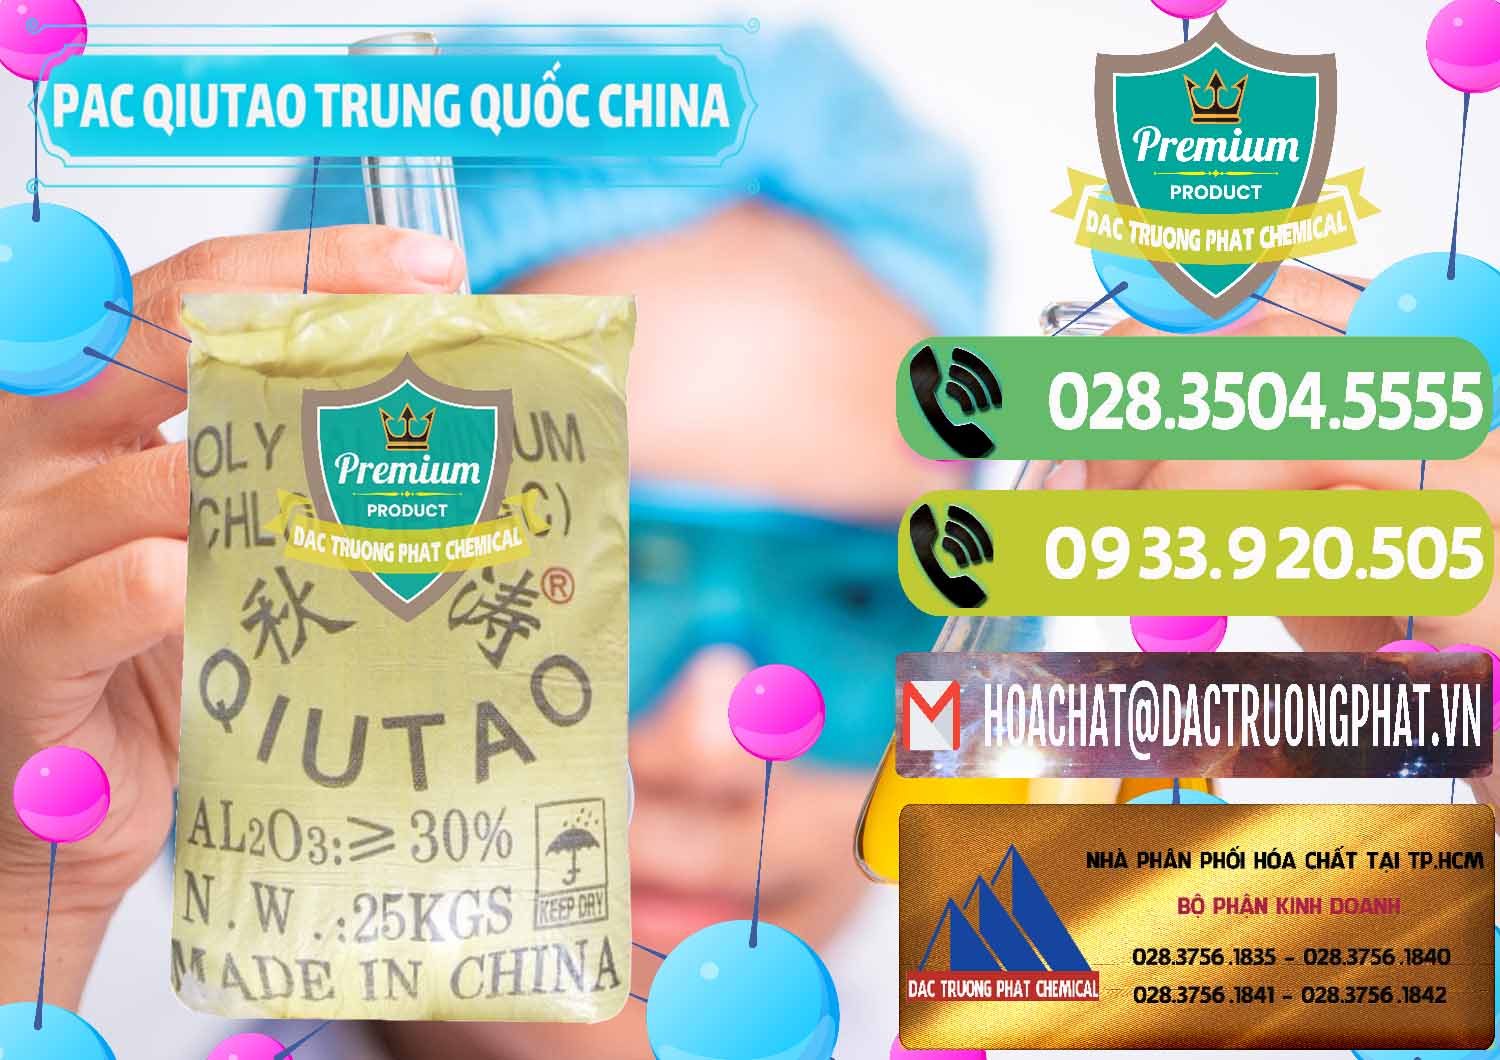 Cty chuyên cung cấp ( bán ) PAC - Polyaluminium Chloride Qiutao Trung Quốc China - 0267 - Cty cung cấp ( phân phối ) hóa chất tại TP.HCM - hoachatmientay.vn